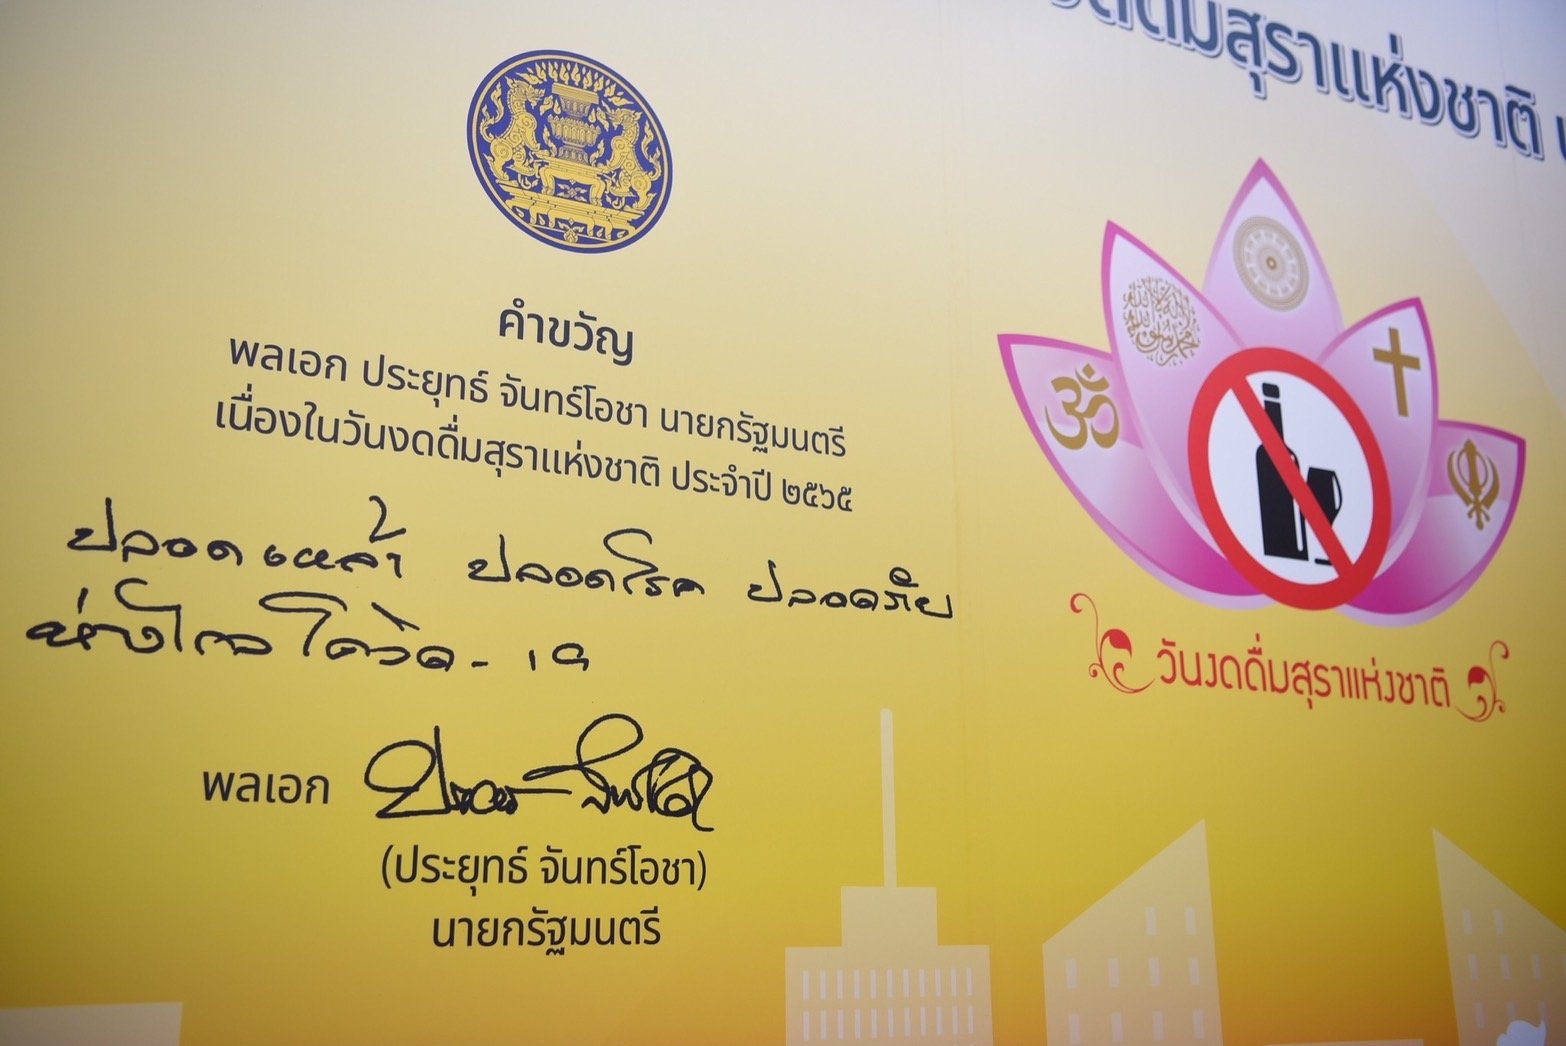 ชวนงดเหล้าเข้าพรรษา 1 ลด 3 เพิ่ม  เนื่องในวันงดดื่มสุราแห่งชาติ ปี 65 thaihealth